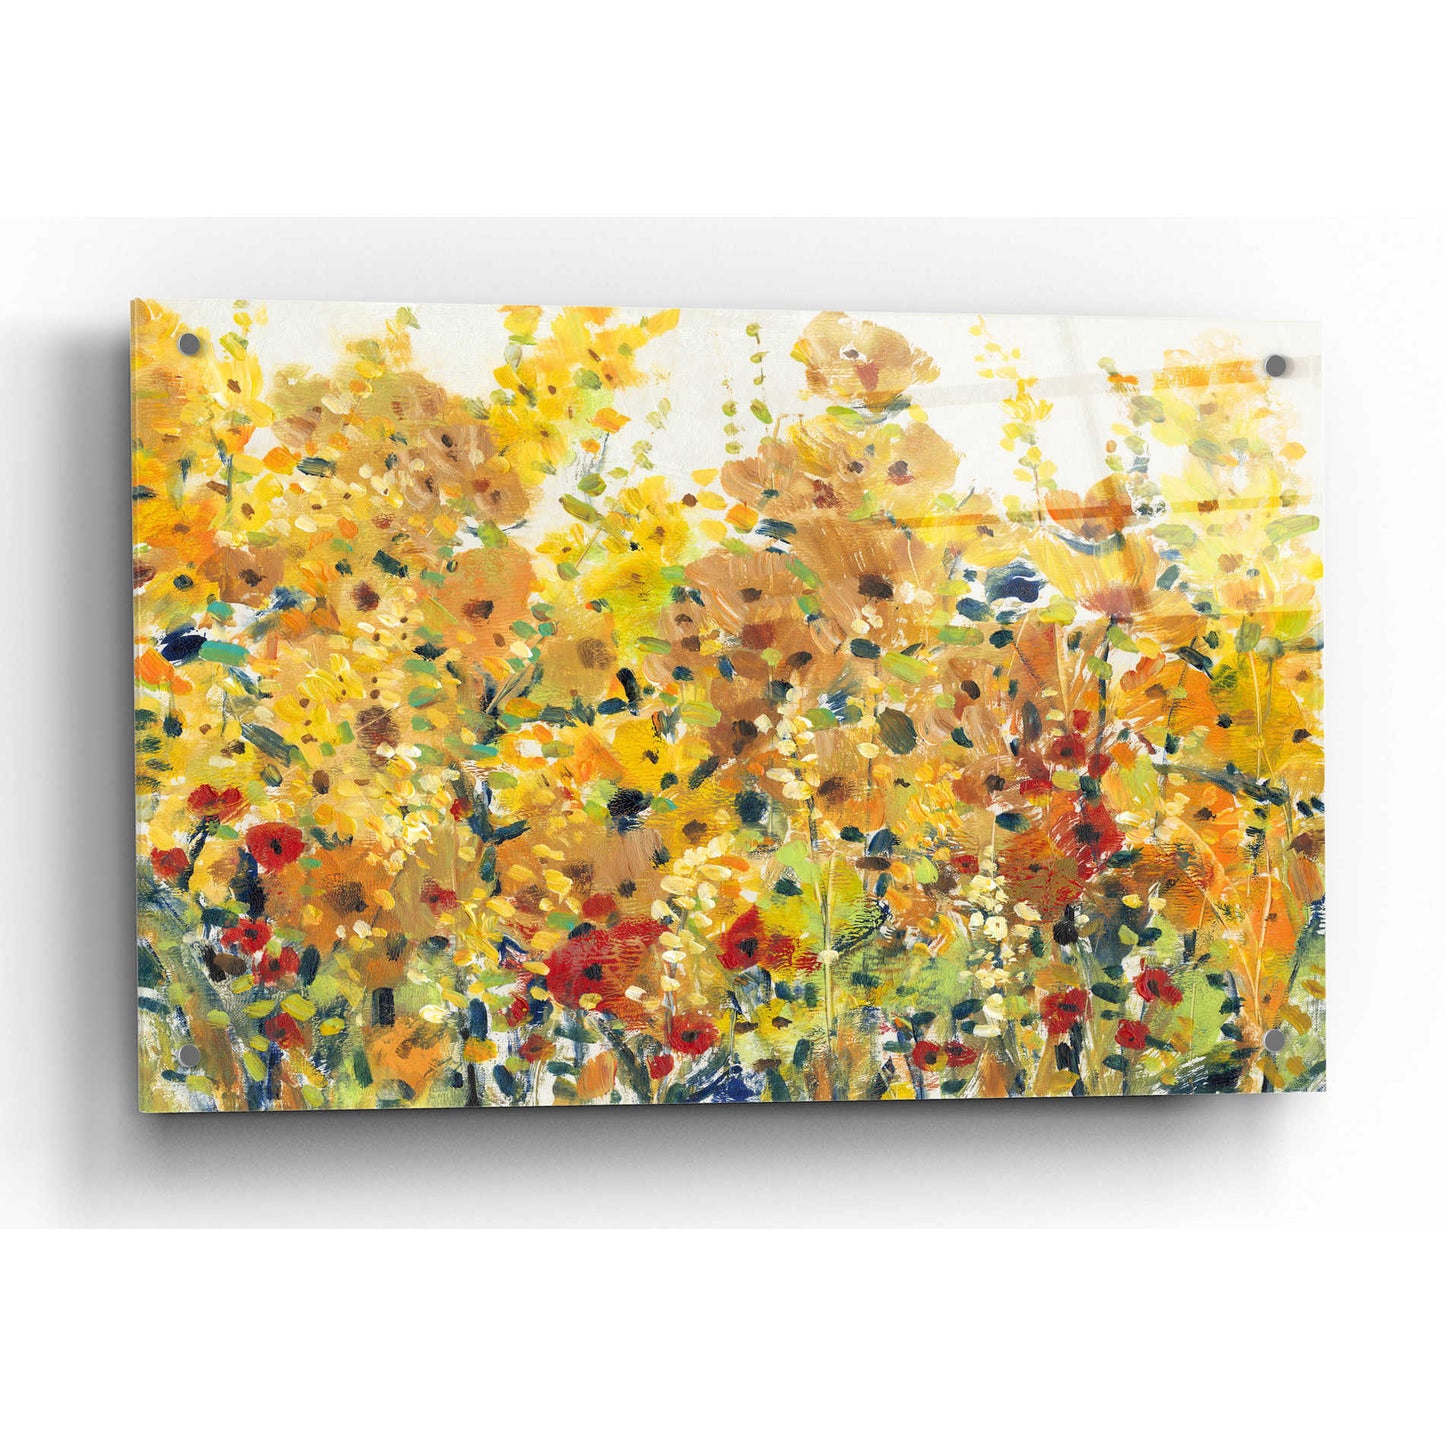 Epic Art 'Golden Summer Garden I' by Tim O'Toole, Acrylic Glass Wall Art,36x24